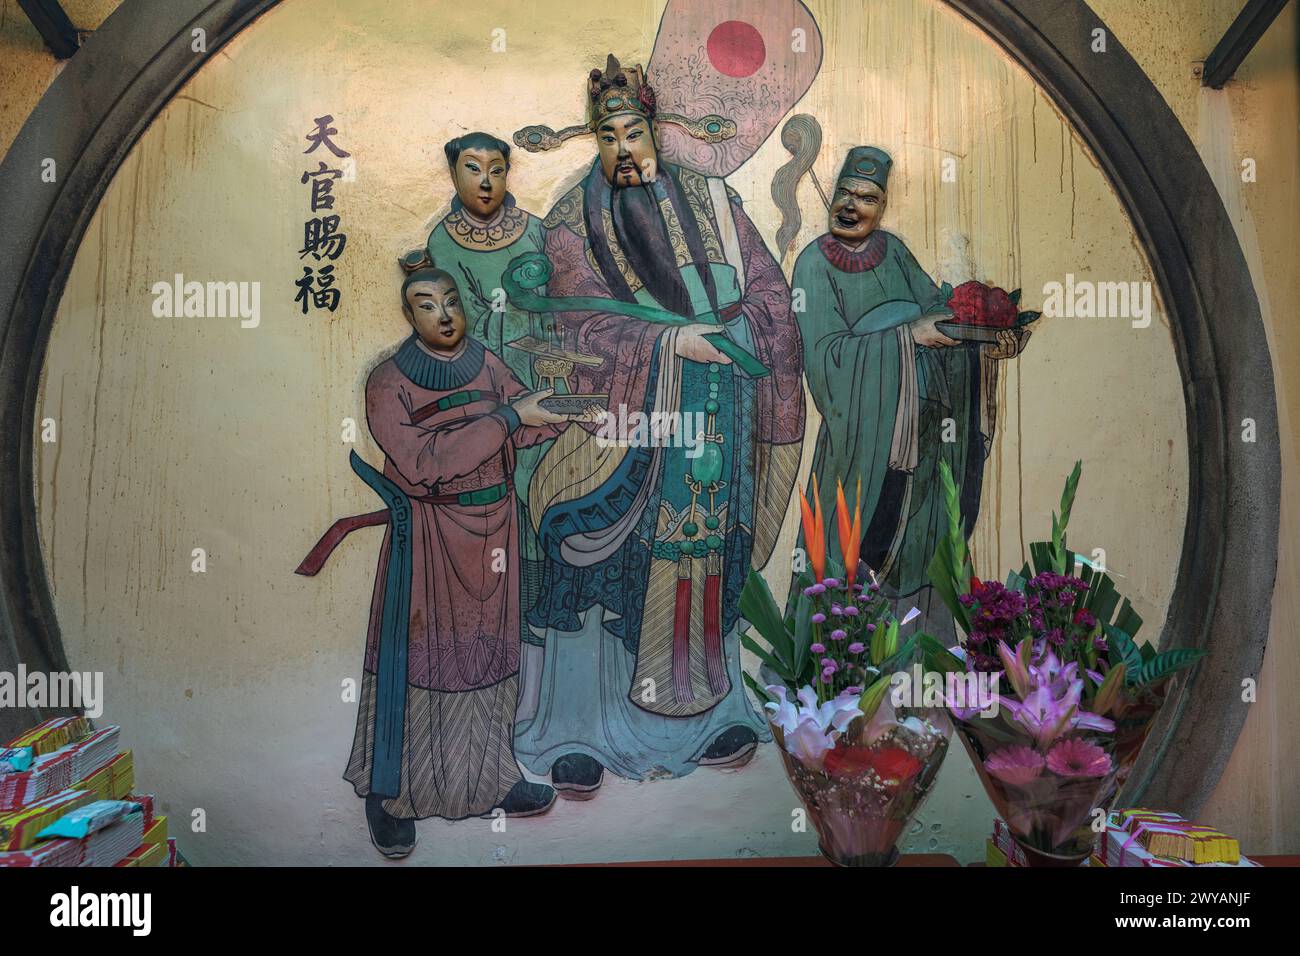 Murale religieuse asiatique traditionnelle représentant des personnages mythologiques aux couleurs vives Banque D'Images